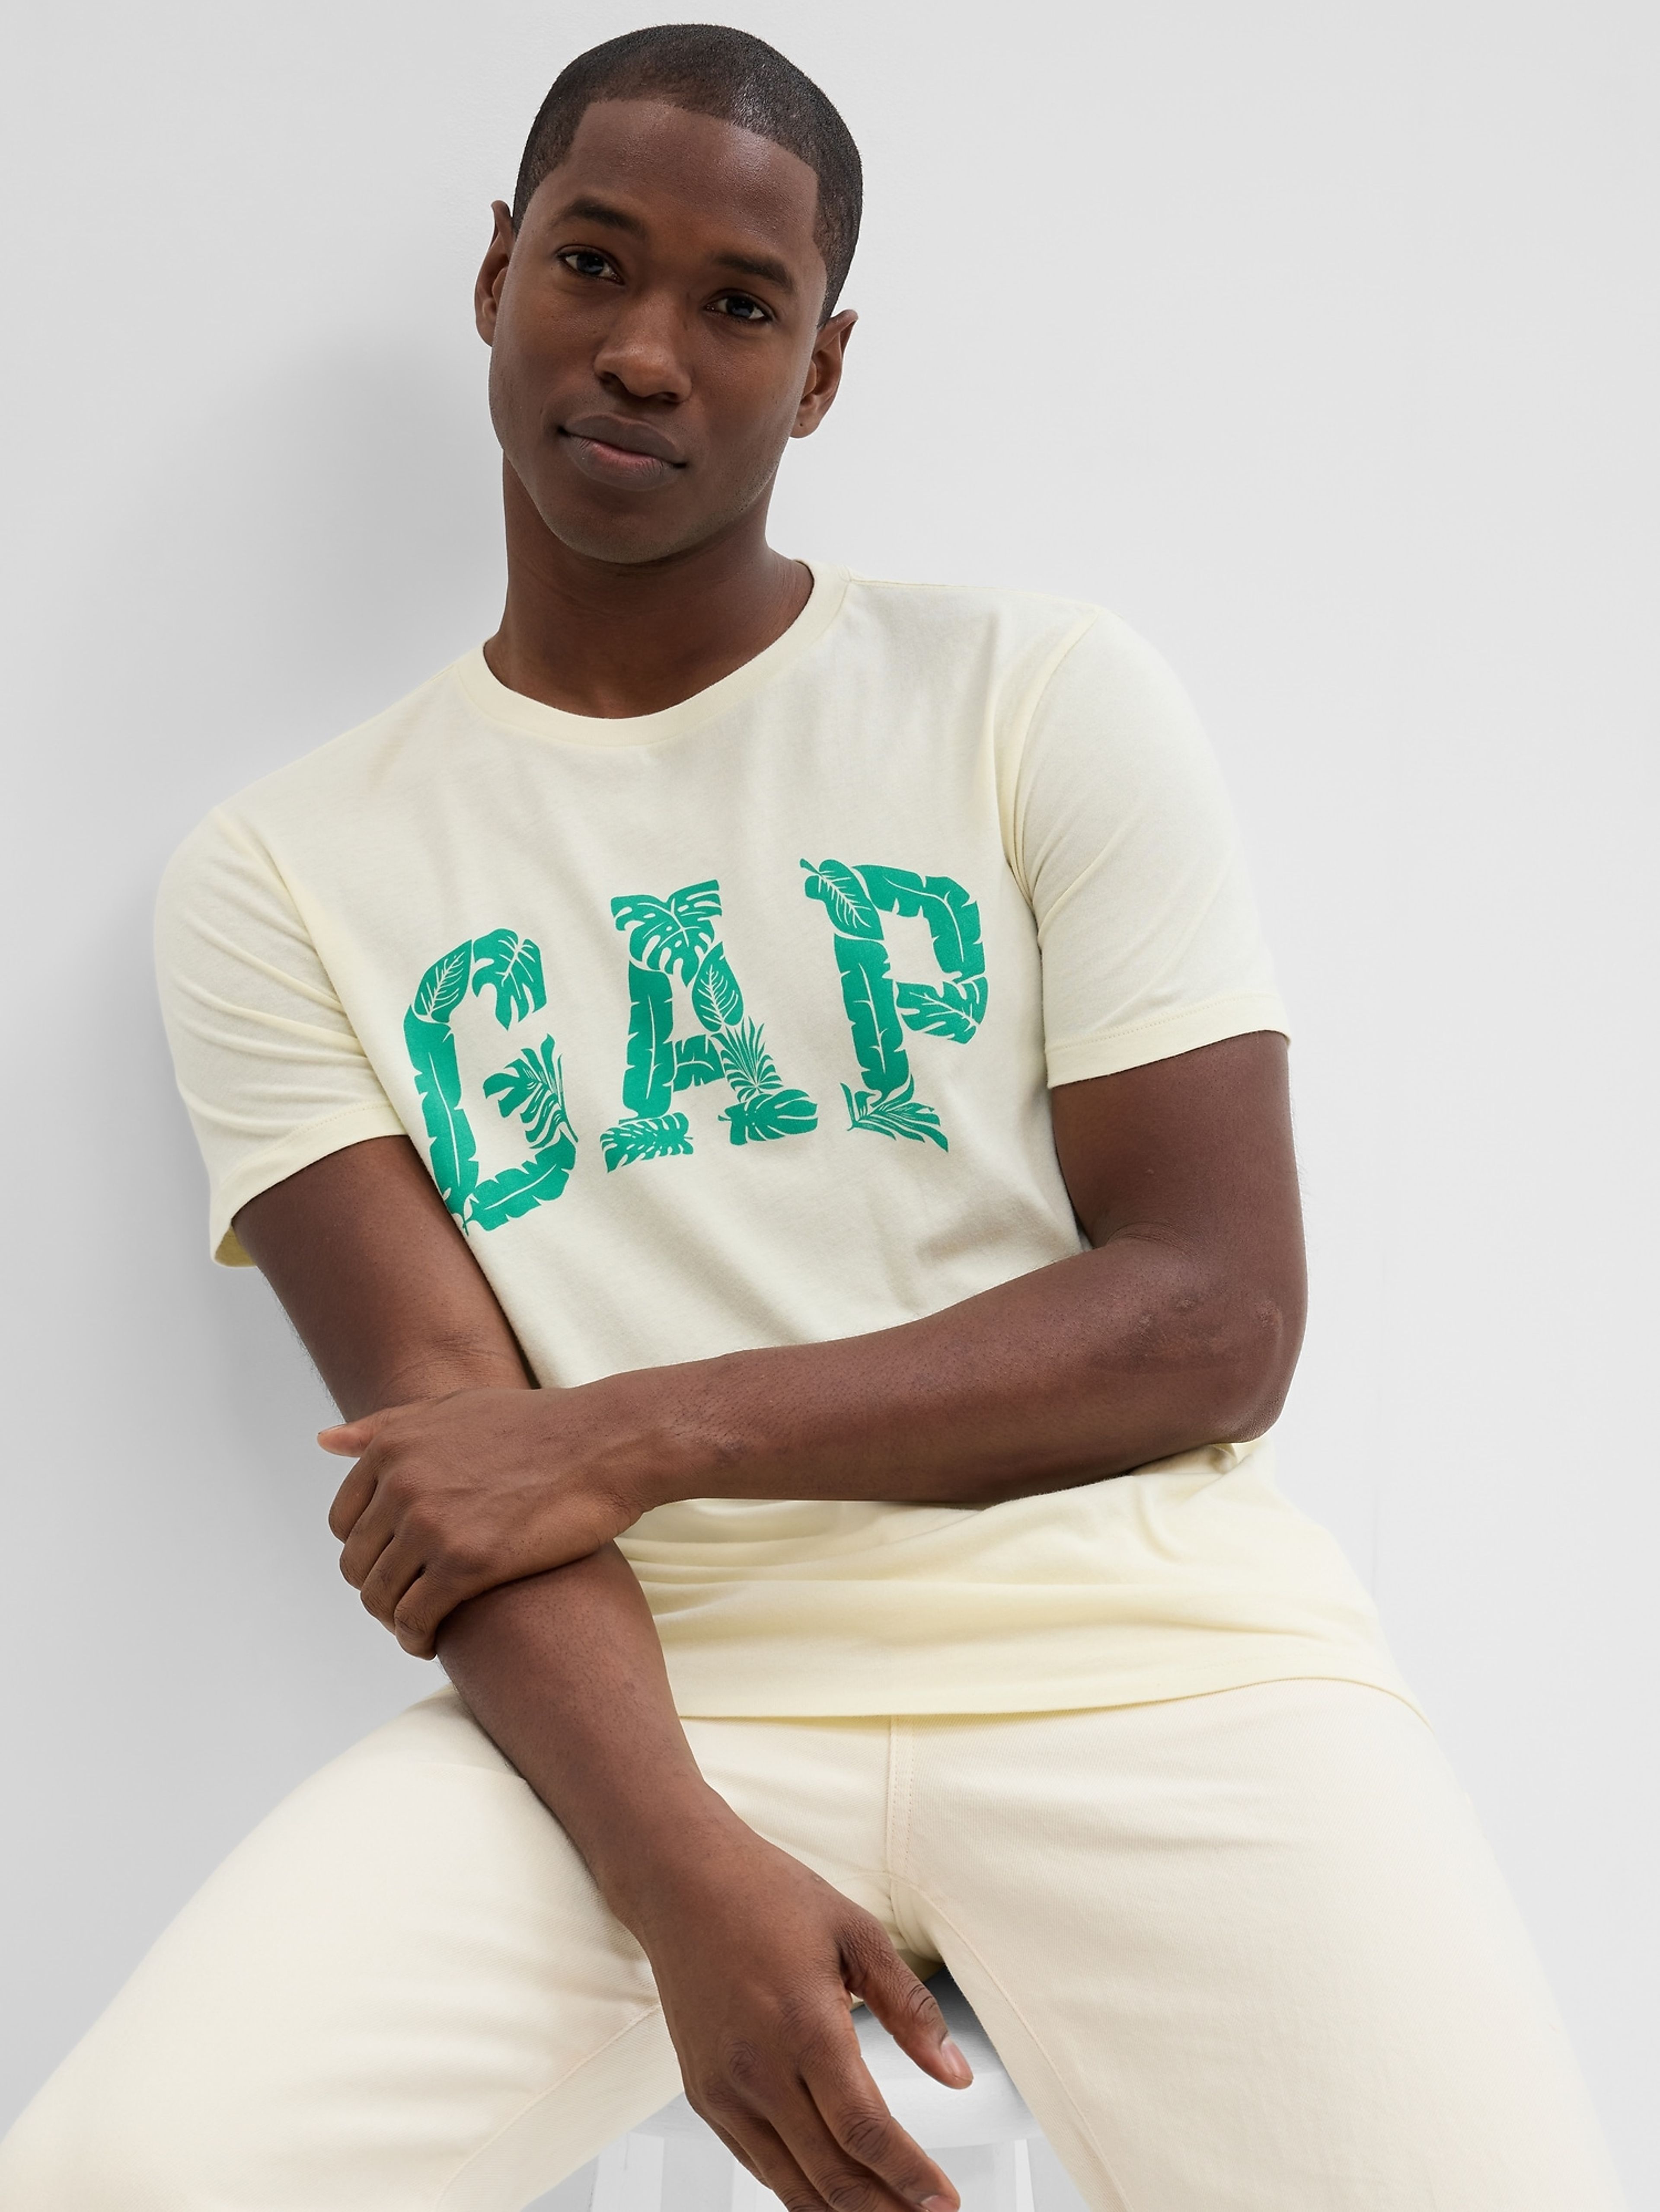 T-Shirt mit GAP Logo